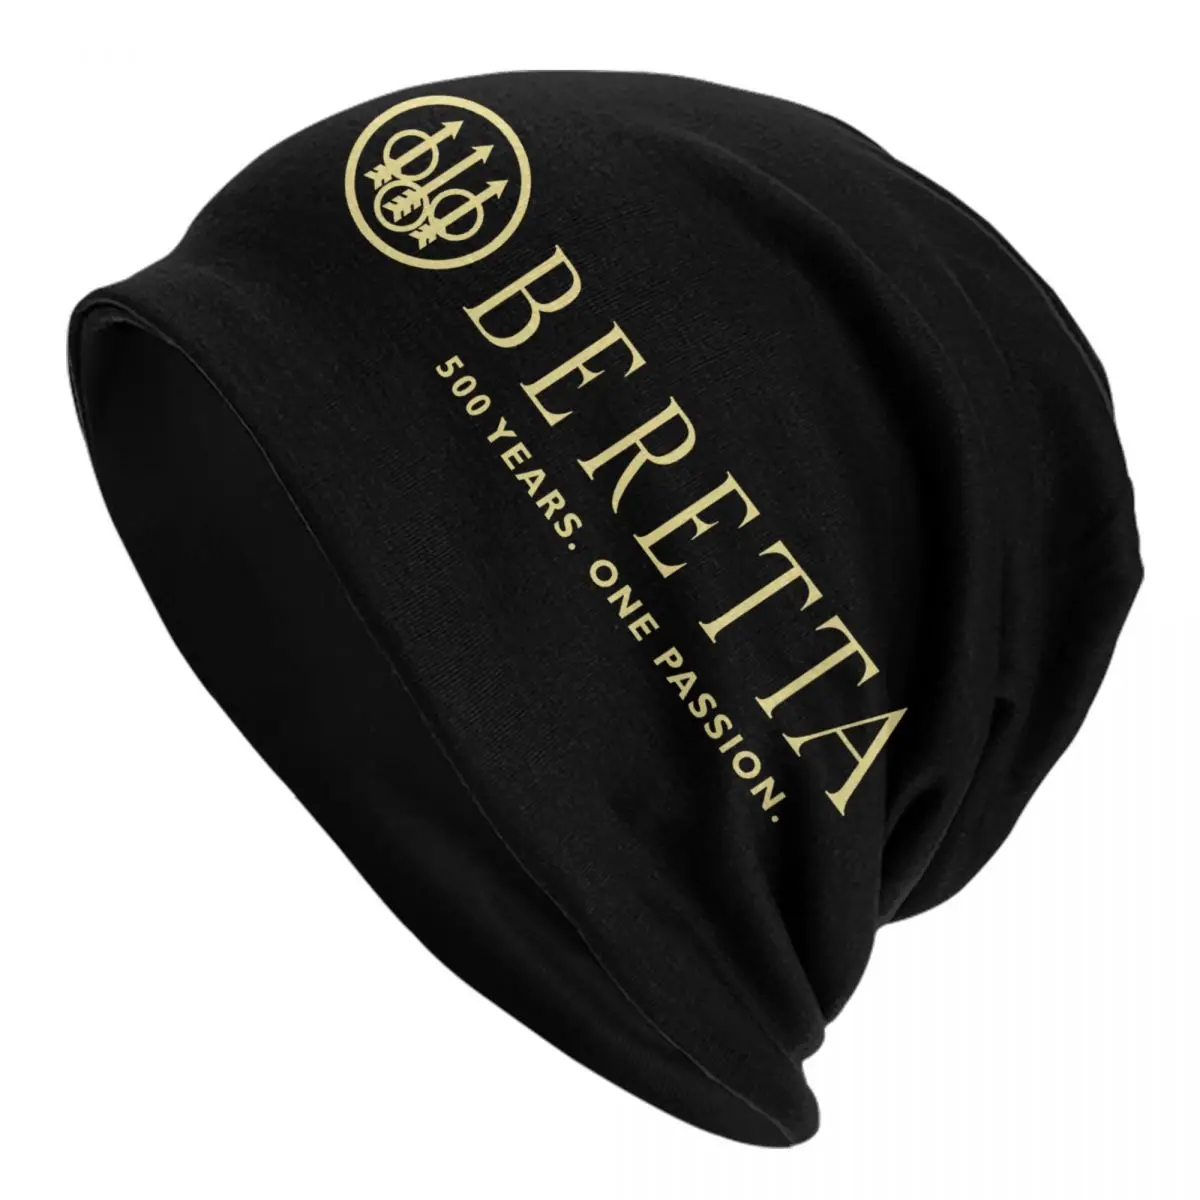 

Облегающая шапка Beretta, зимняя теплая шапка, мужские вязаные шапки, уличные Лыжные шапки в стиле милитари, подарочные шапочки, облегающие шапки для мужчин и женщин